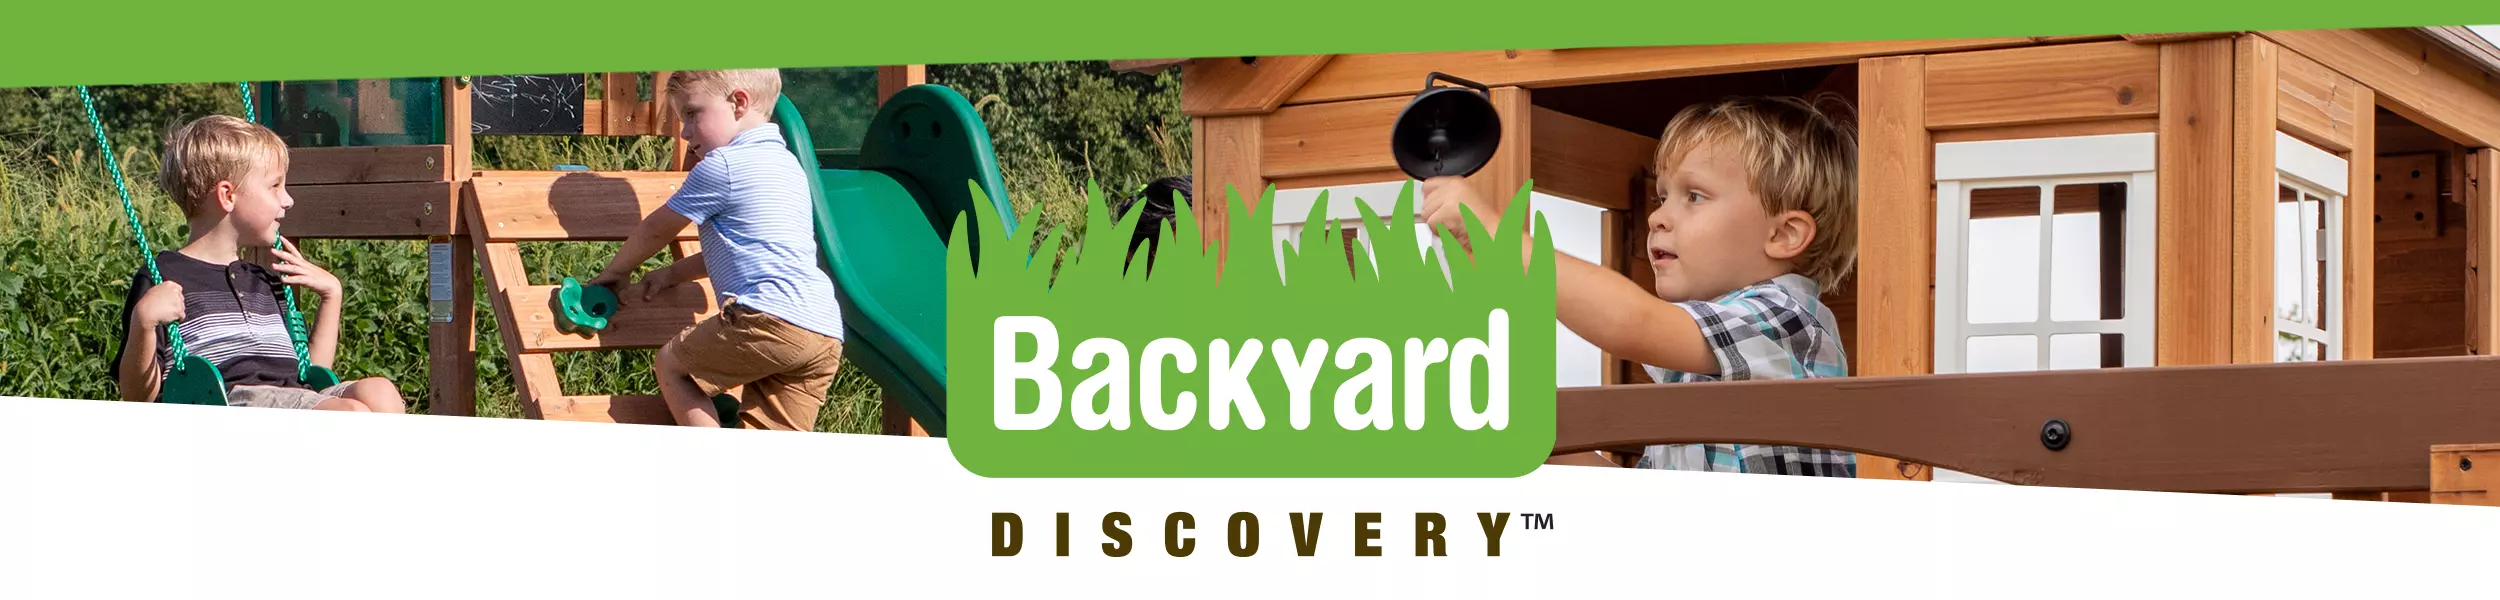 Backyard Discovery  Spielhaus und Spielzeug Holz